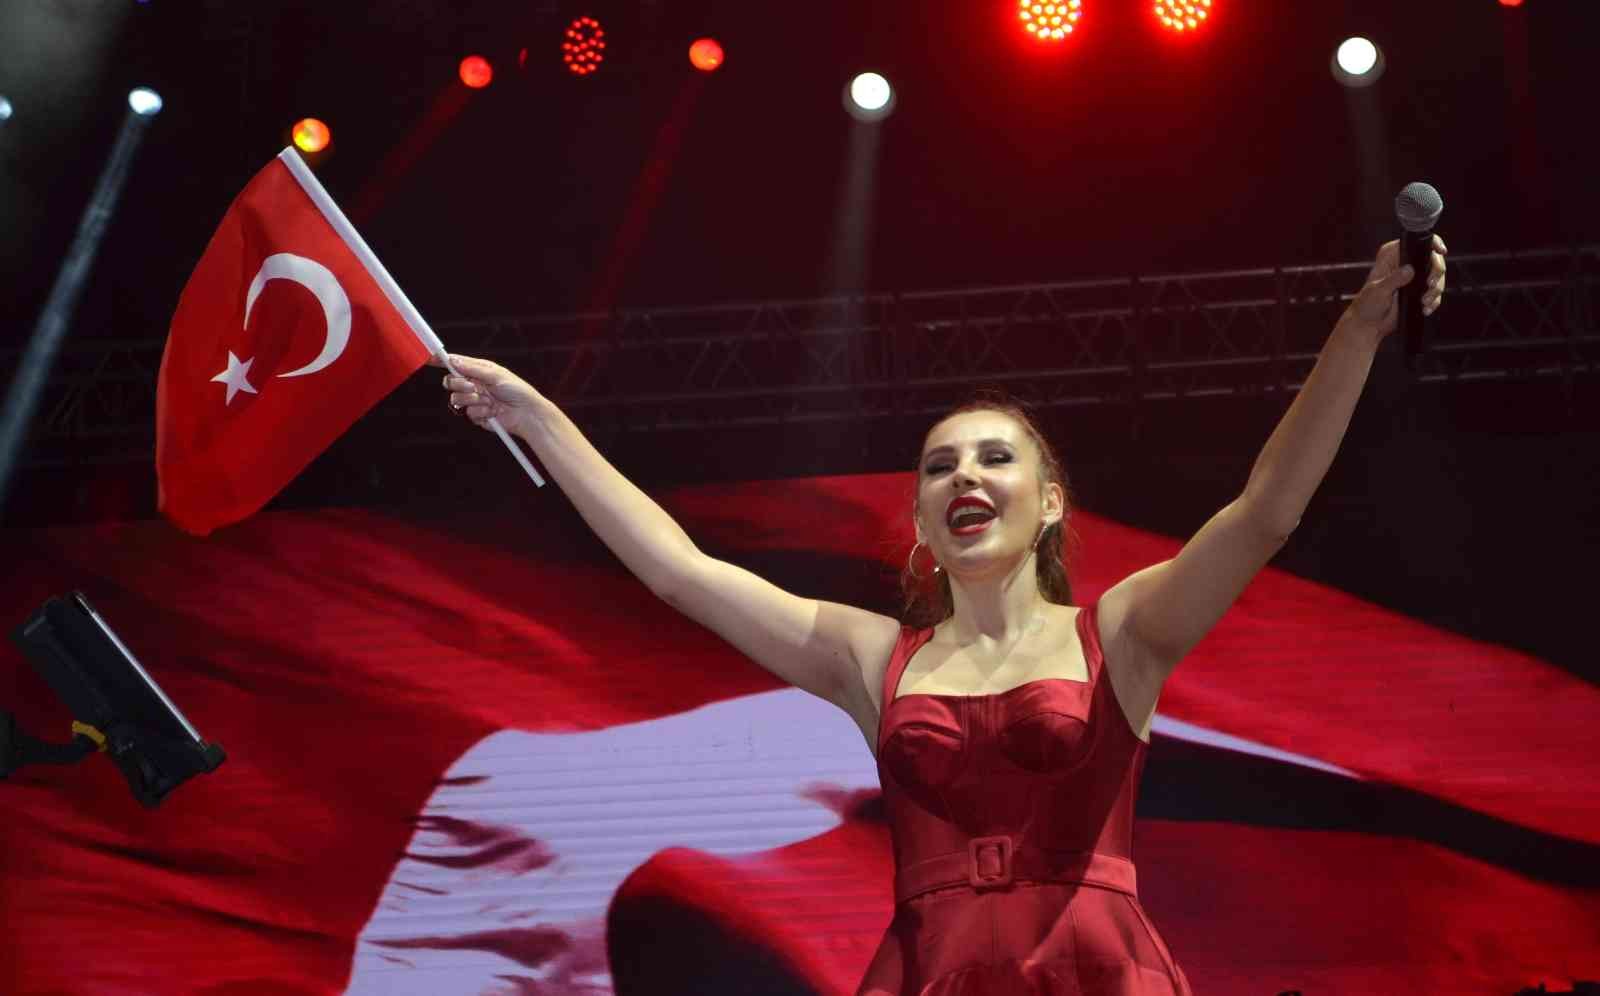 Osmaniye’de Funda Arar ile Turgay Başyayla 29 Ekim Cumhuriyet Bayramı kutlamaları kapsamında konser verdi #osmaniye